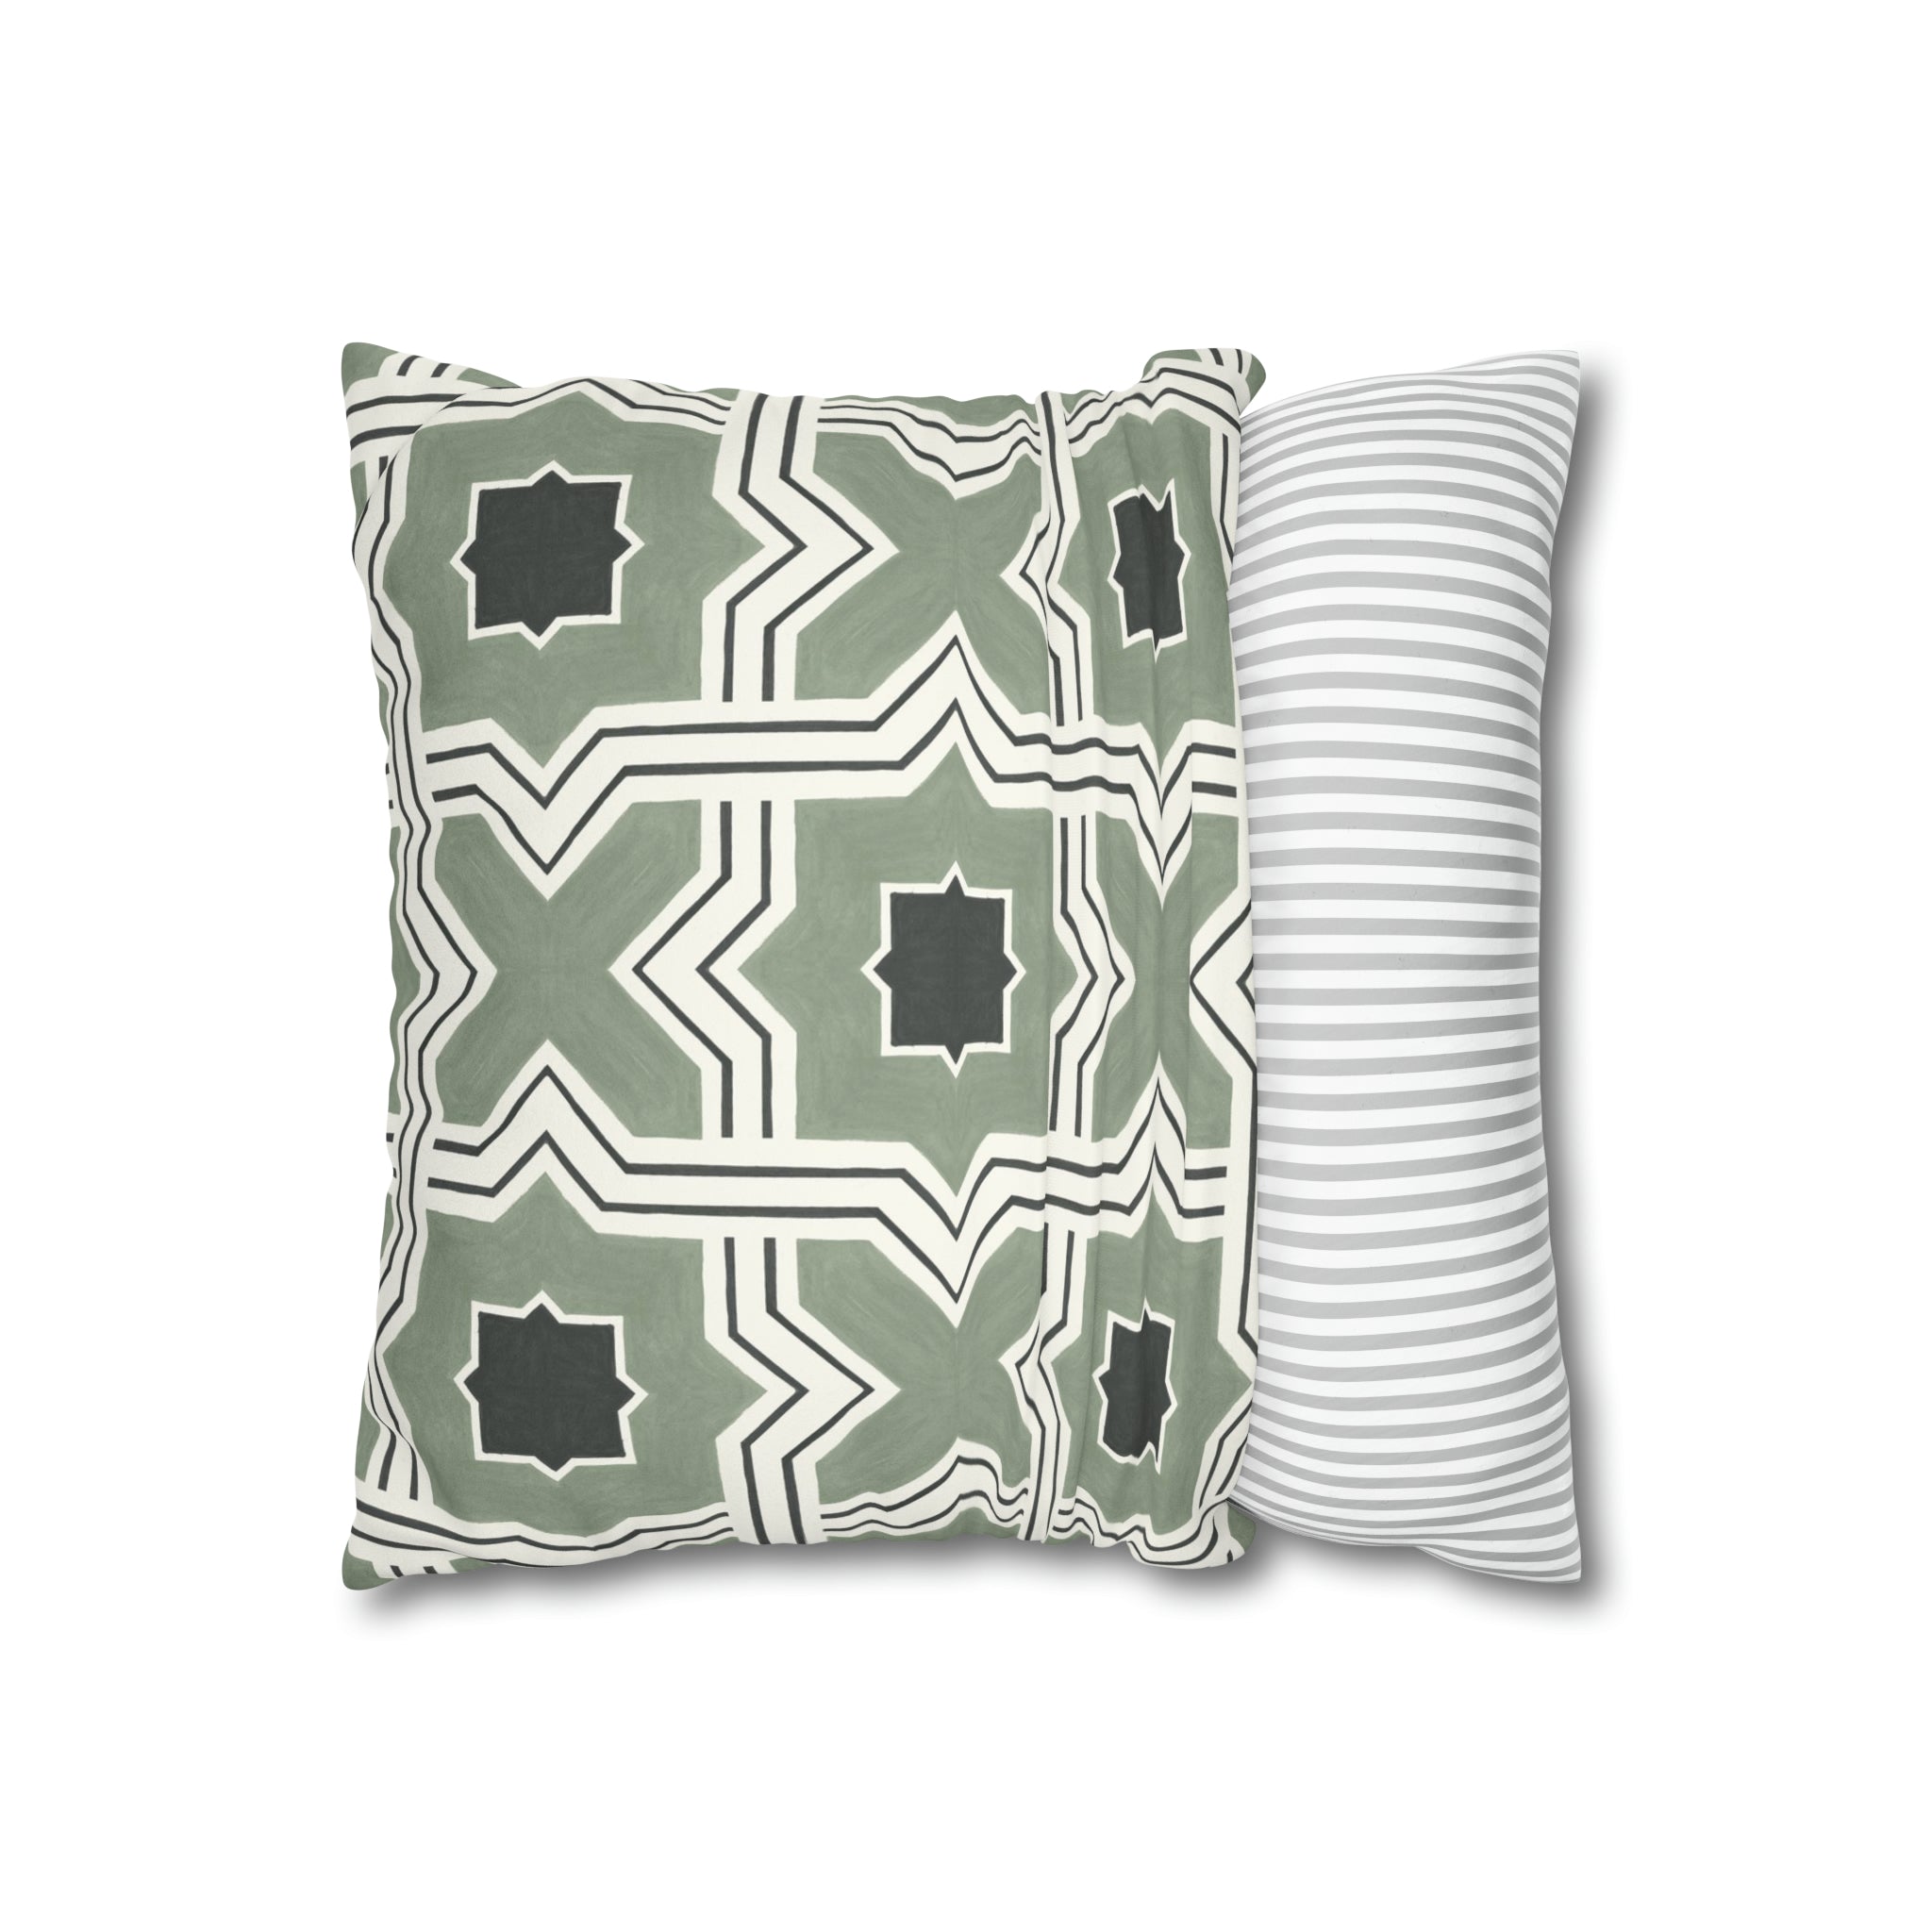 Lattice Pea Green Microsuede Square Pillow Cover